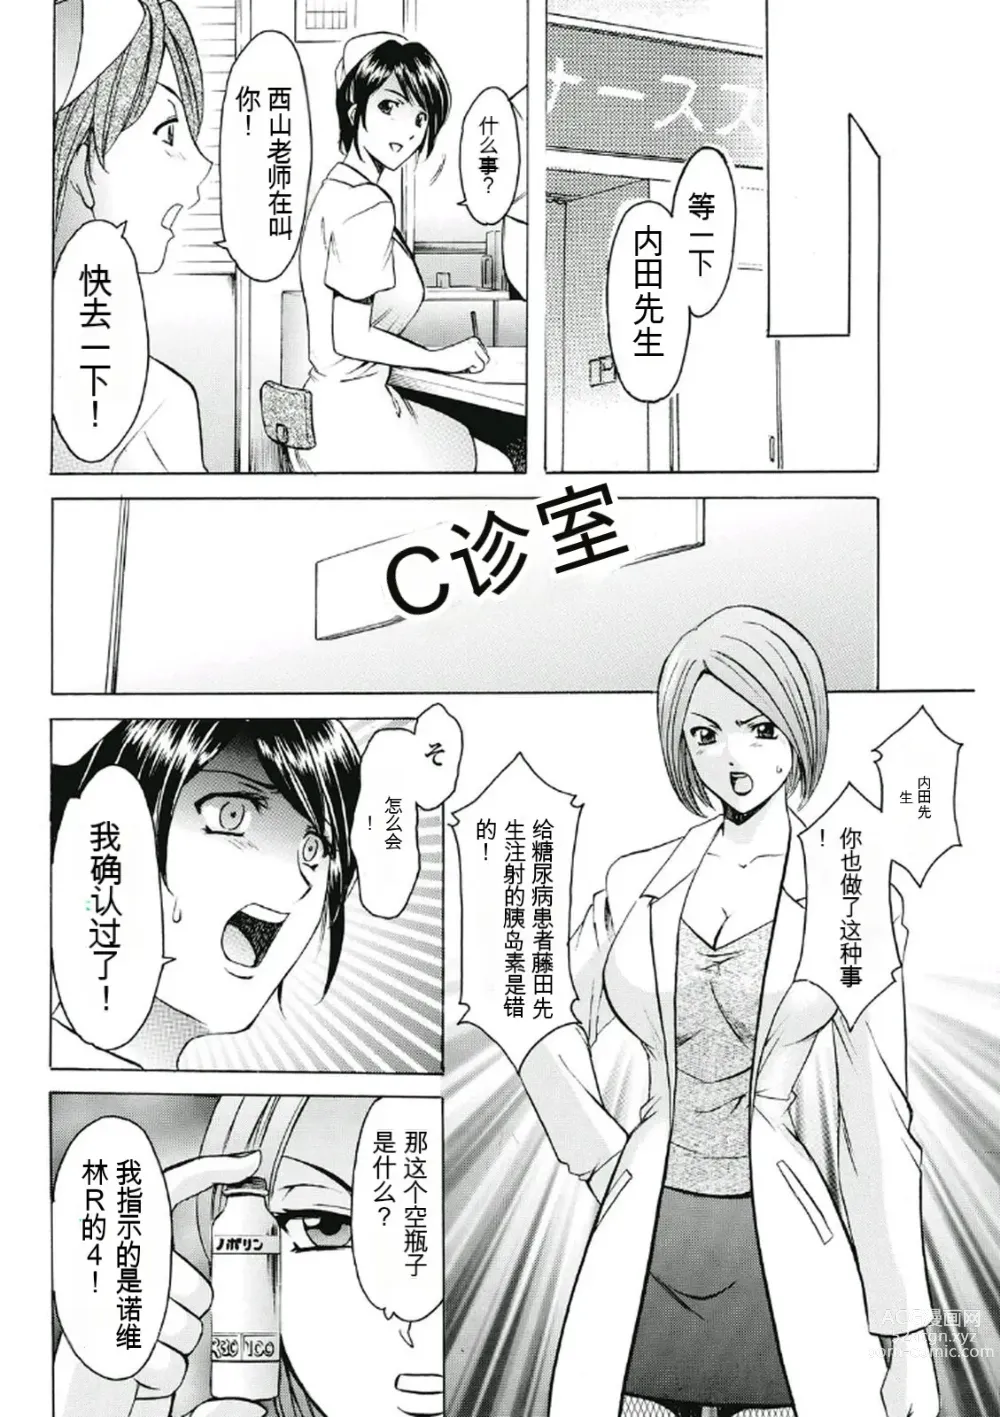 Page 8 of manga Chijoku Byoutou -Hakui no Datenshi-